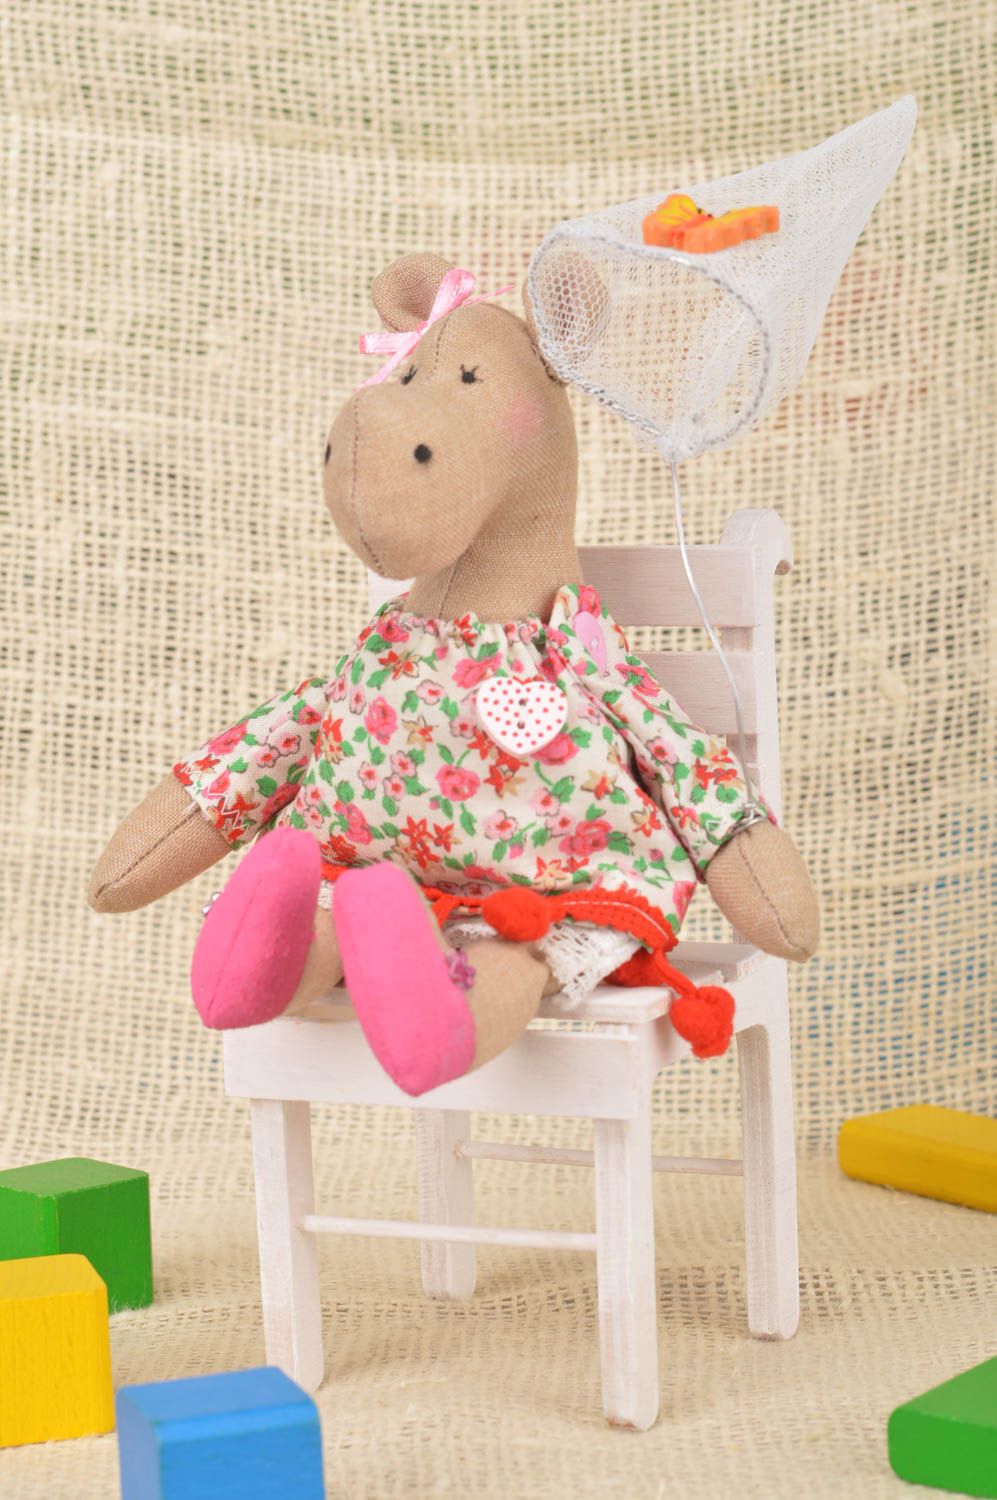 Мягкая игрушка ручной работы для дома из хлопка Бегемотик в платье на стуле фото 1